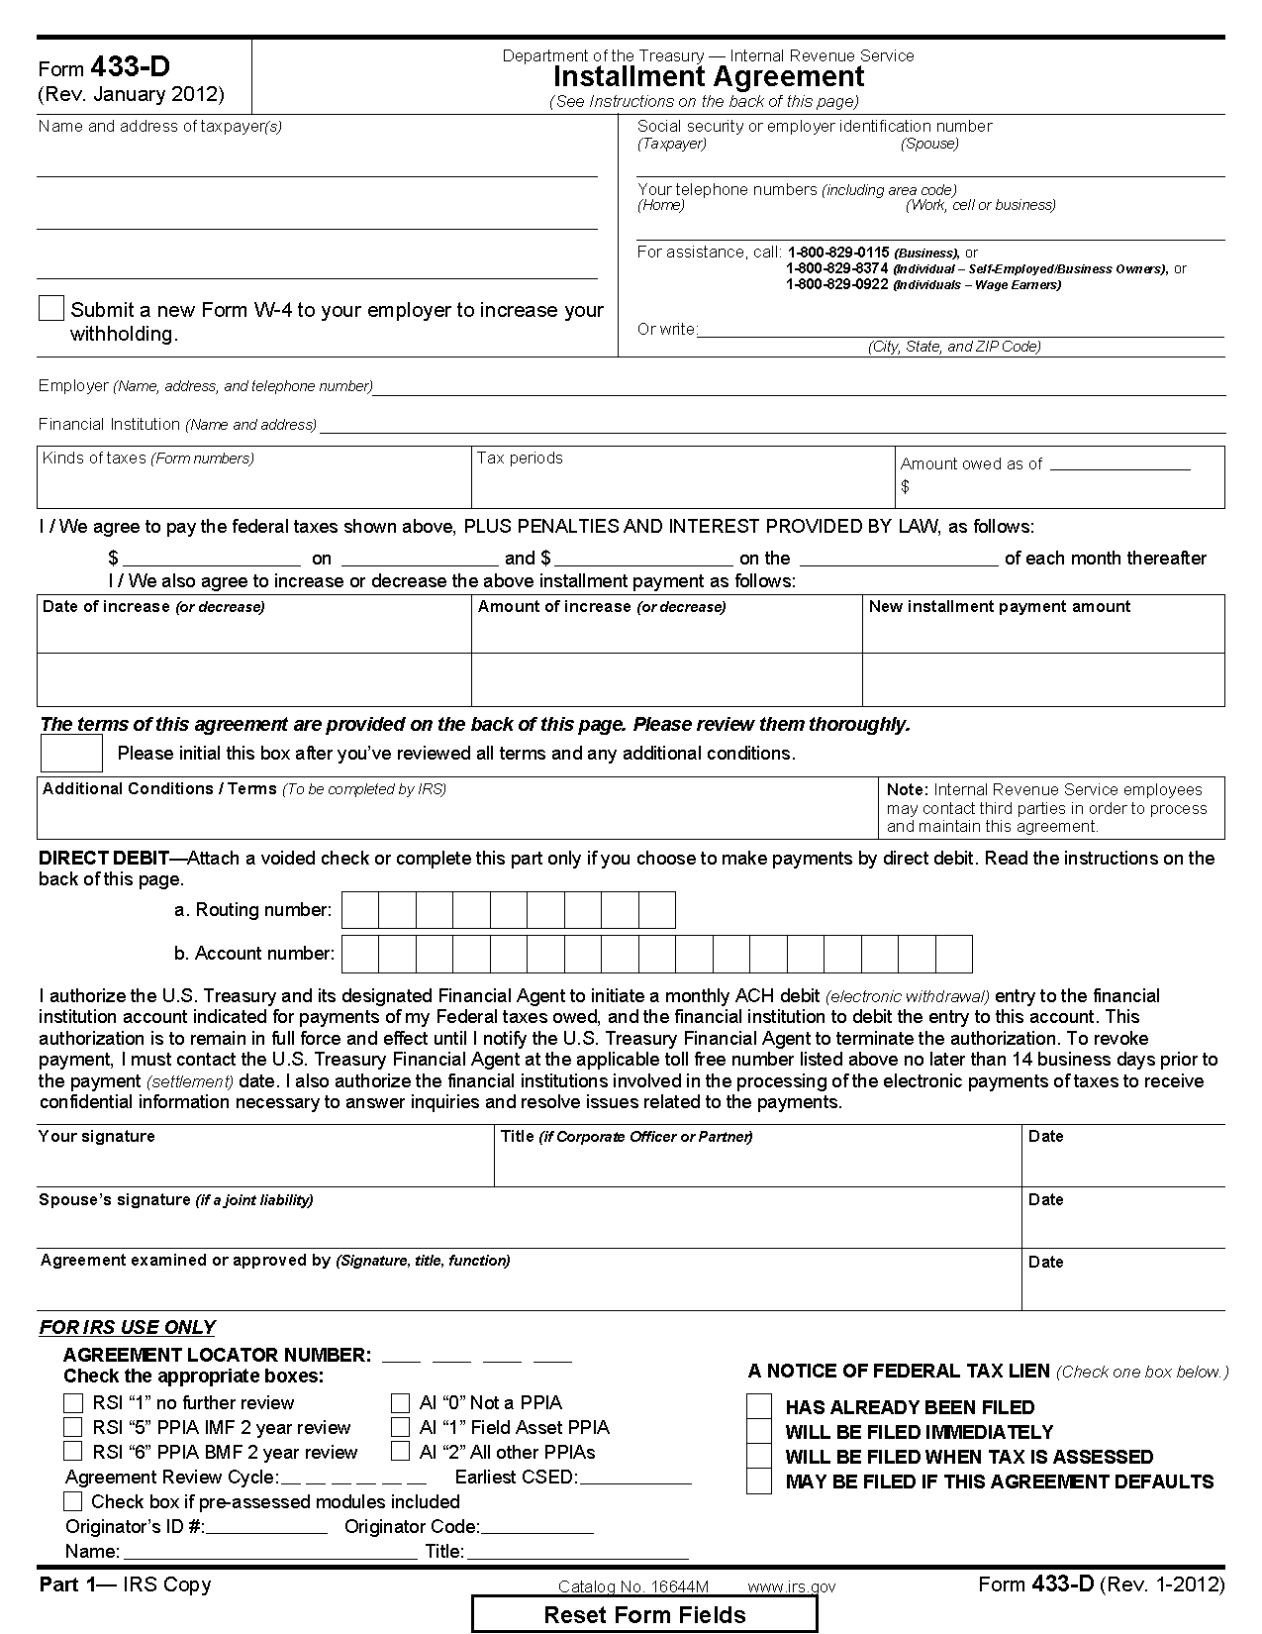 Form 433-D Installment Agreement regarding Toll Processing Agreement Template